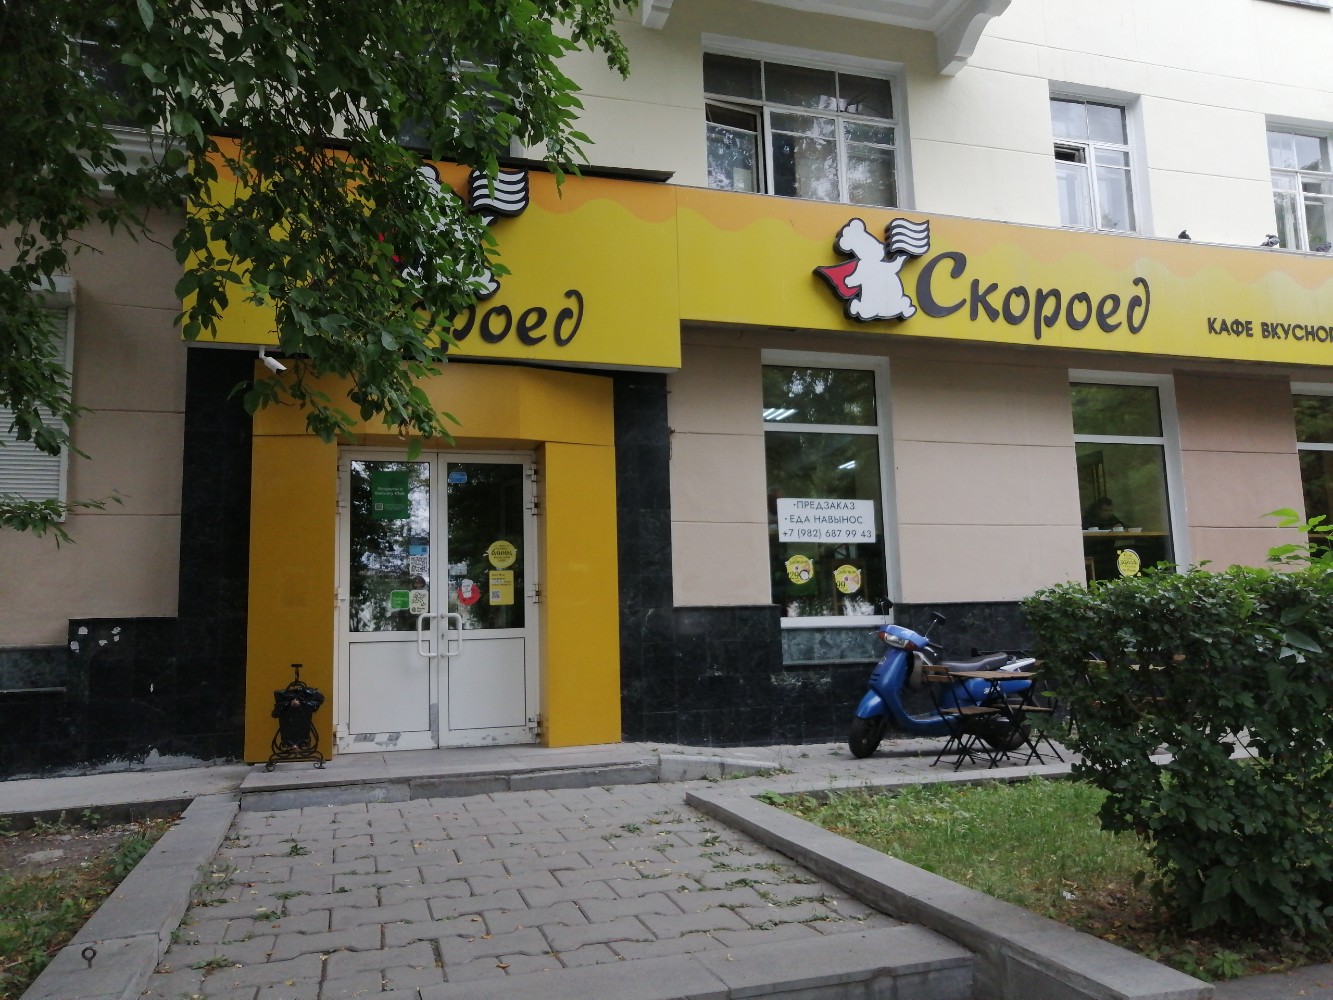 Скороед, кафе, ул. Гагарина, 27, Екатеринбург — Яндекс Карты